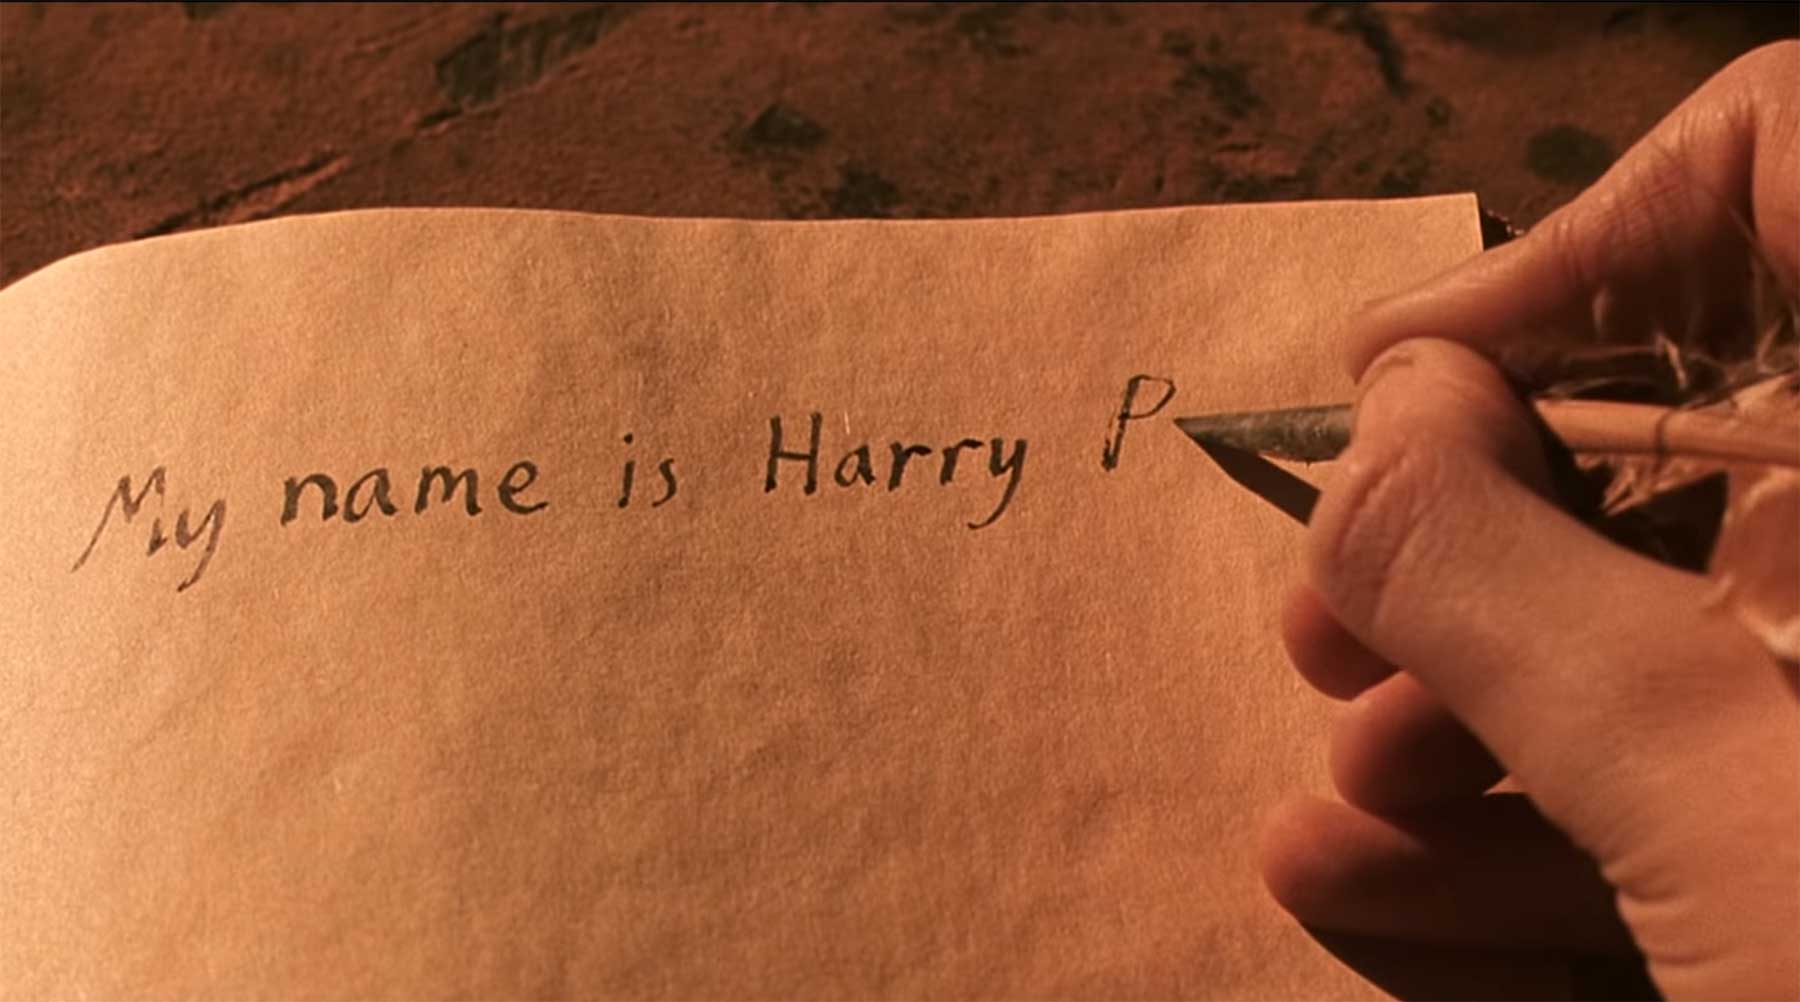 Harry Potter und die unbeabsichtigten ASMR-Momente harry-potter-asmr 